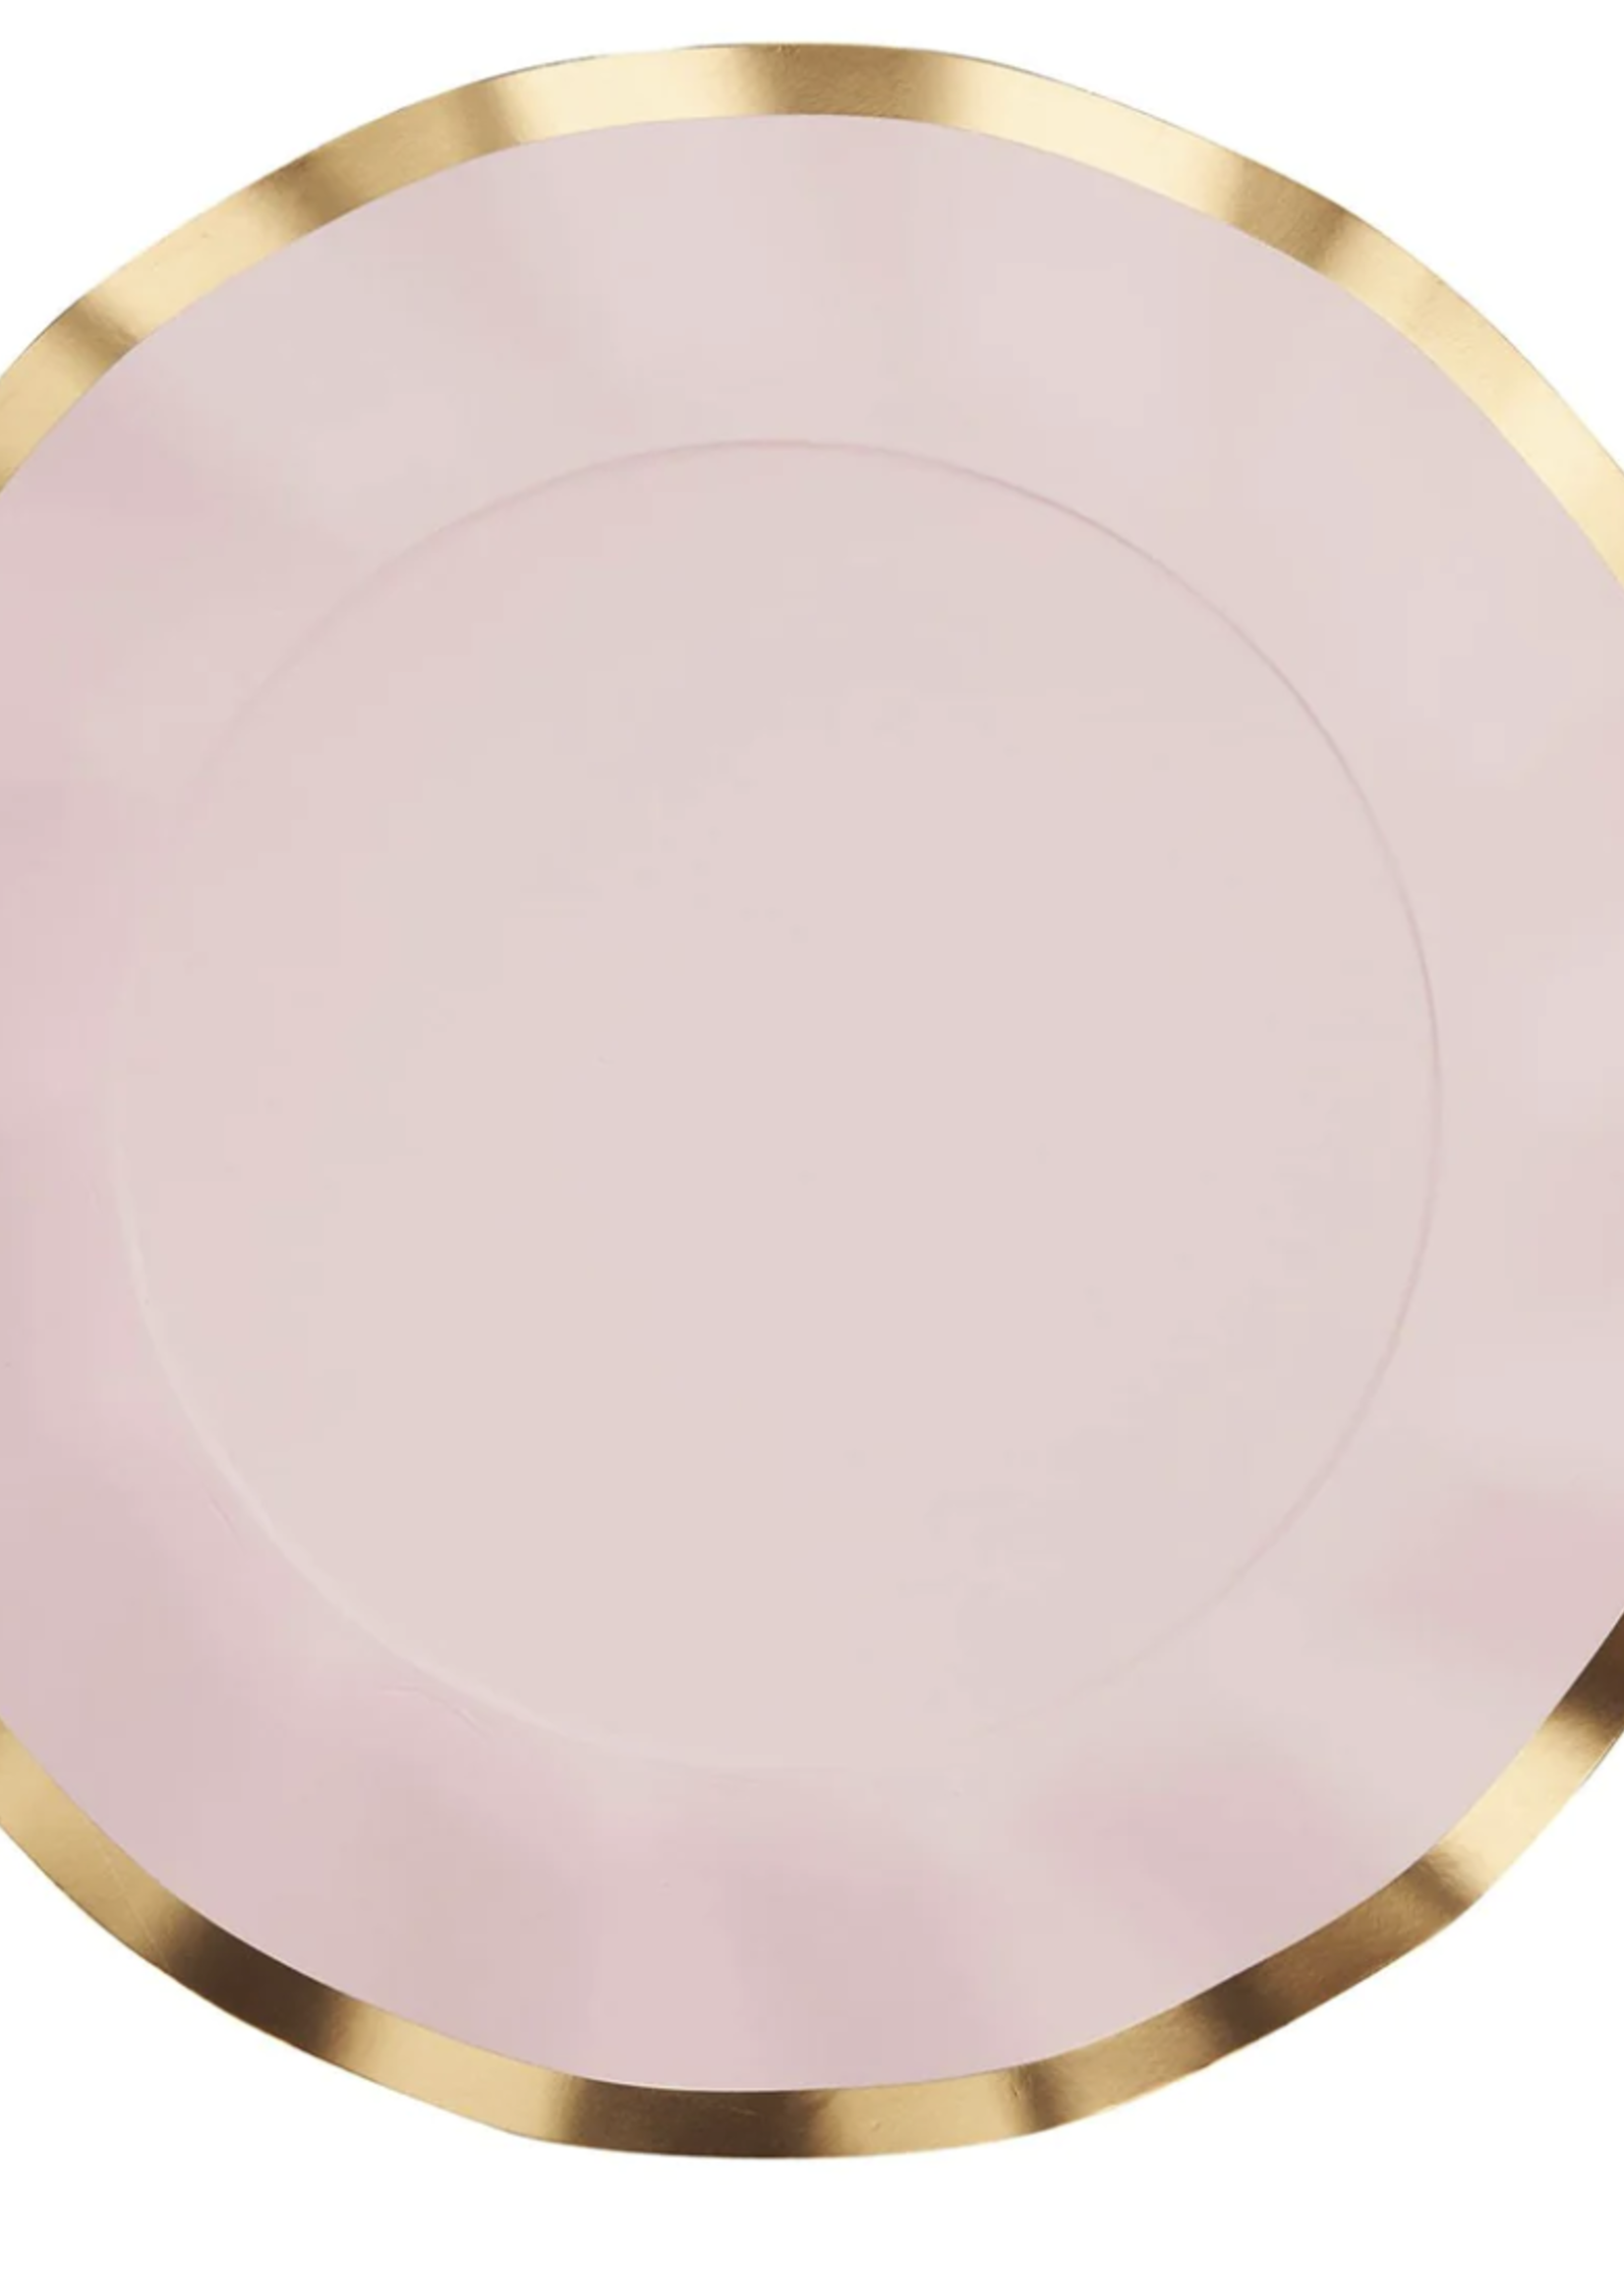 Sophistiplate Wavy Dinner Plate Everyday Blush - 8pkg